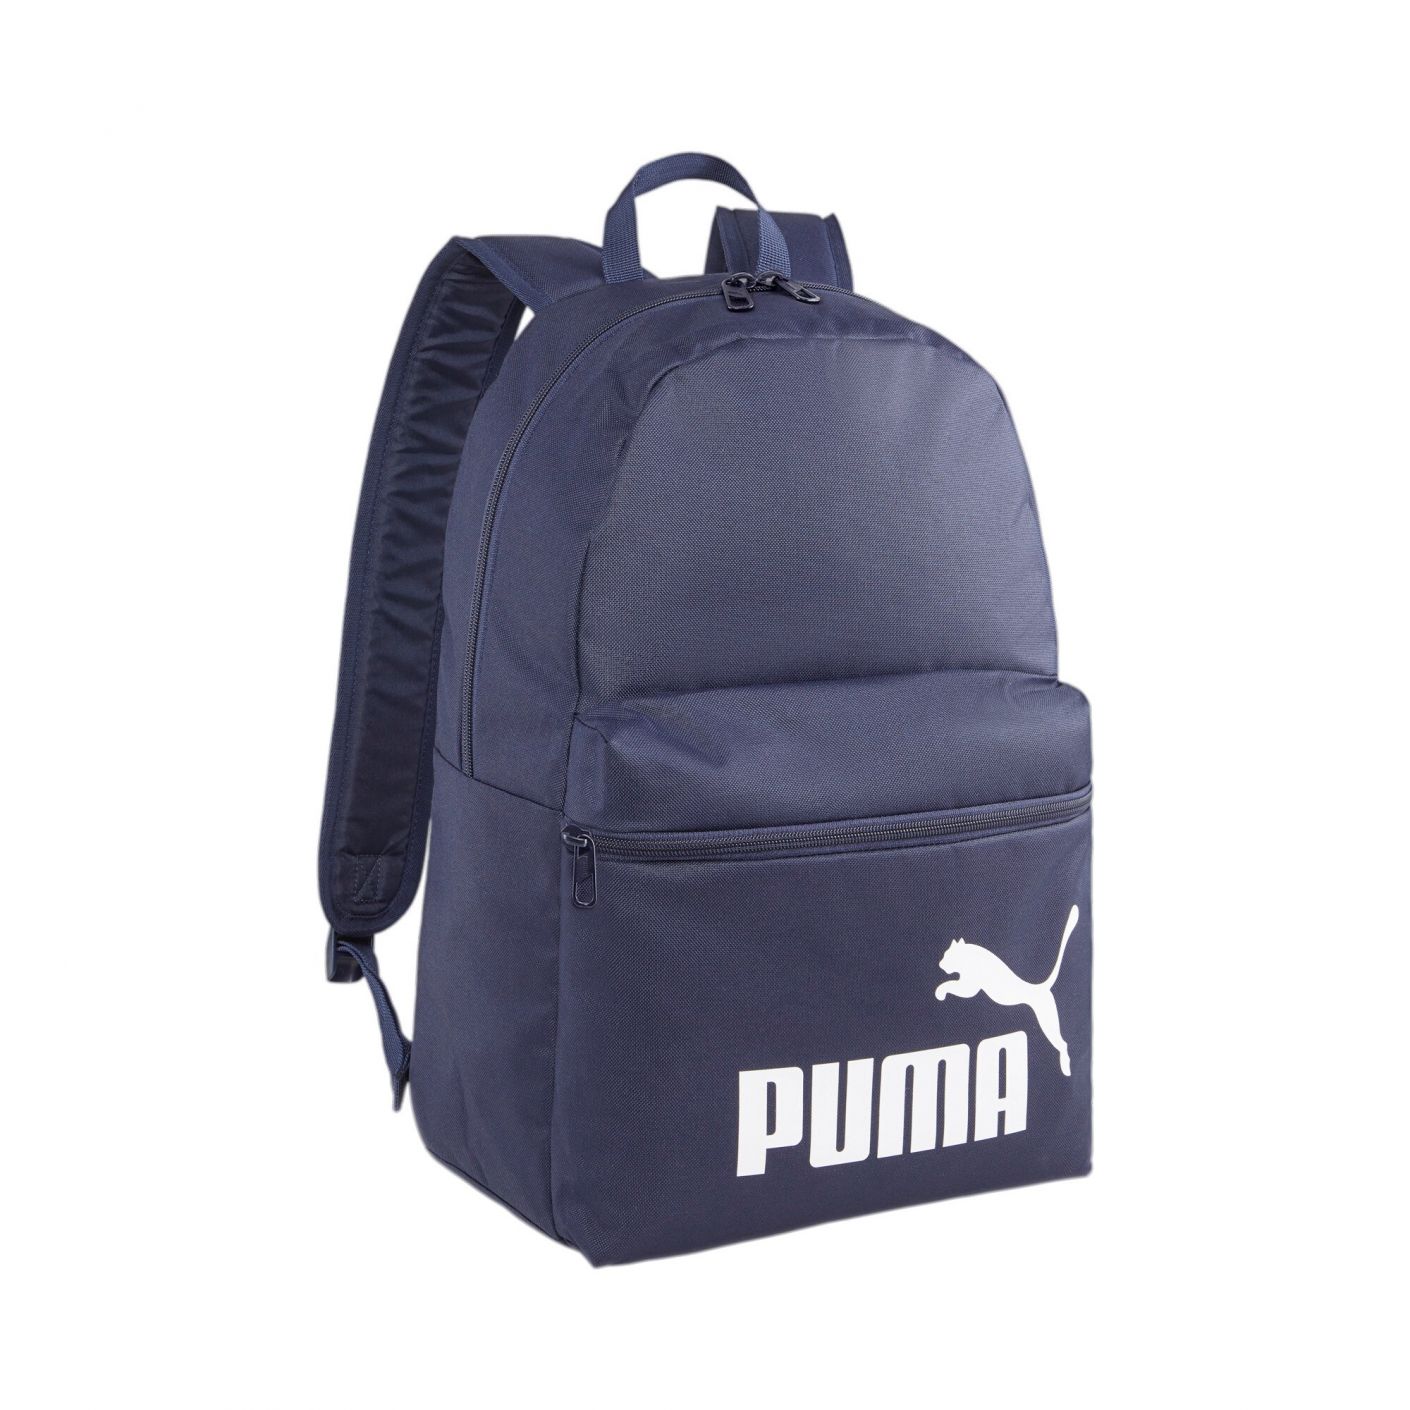 Puma Phase Backpack Black